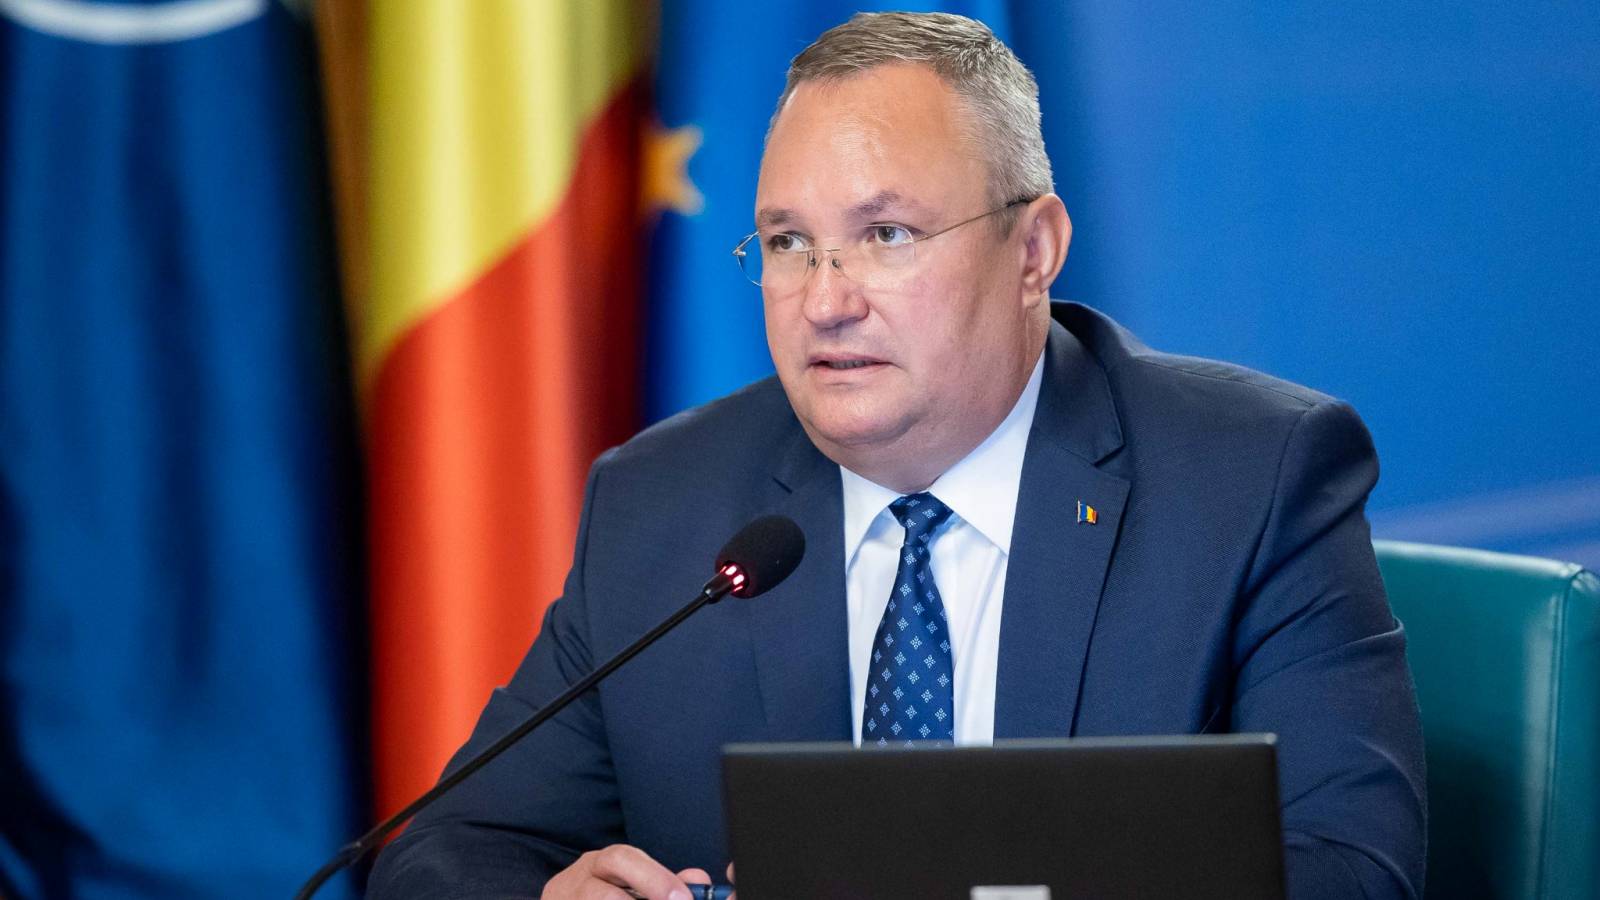 Nicolae Ciuca besprach die Bedrohungen für Rumänien mit dem Generalsekretär der NATO